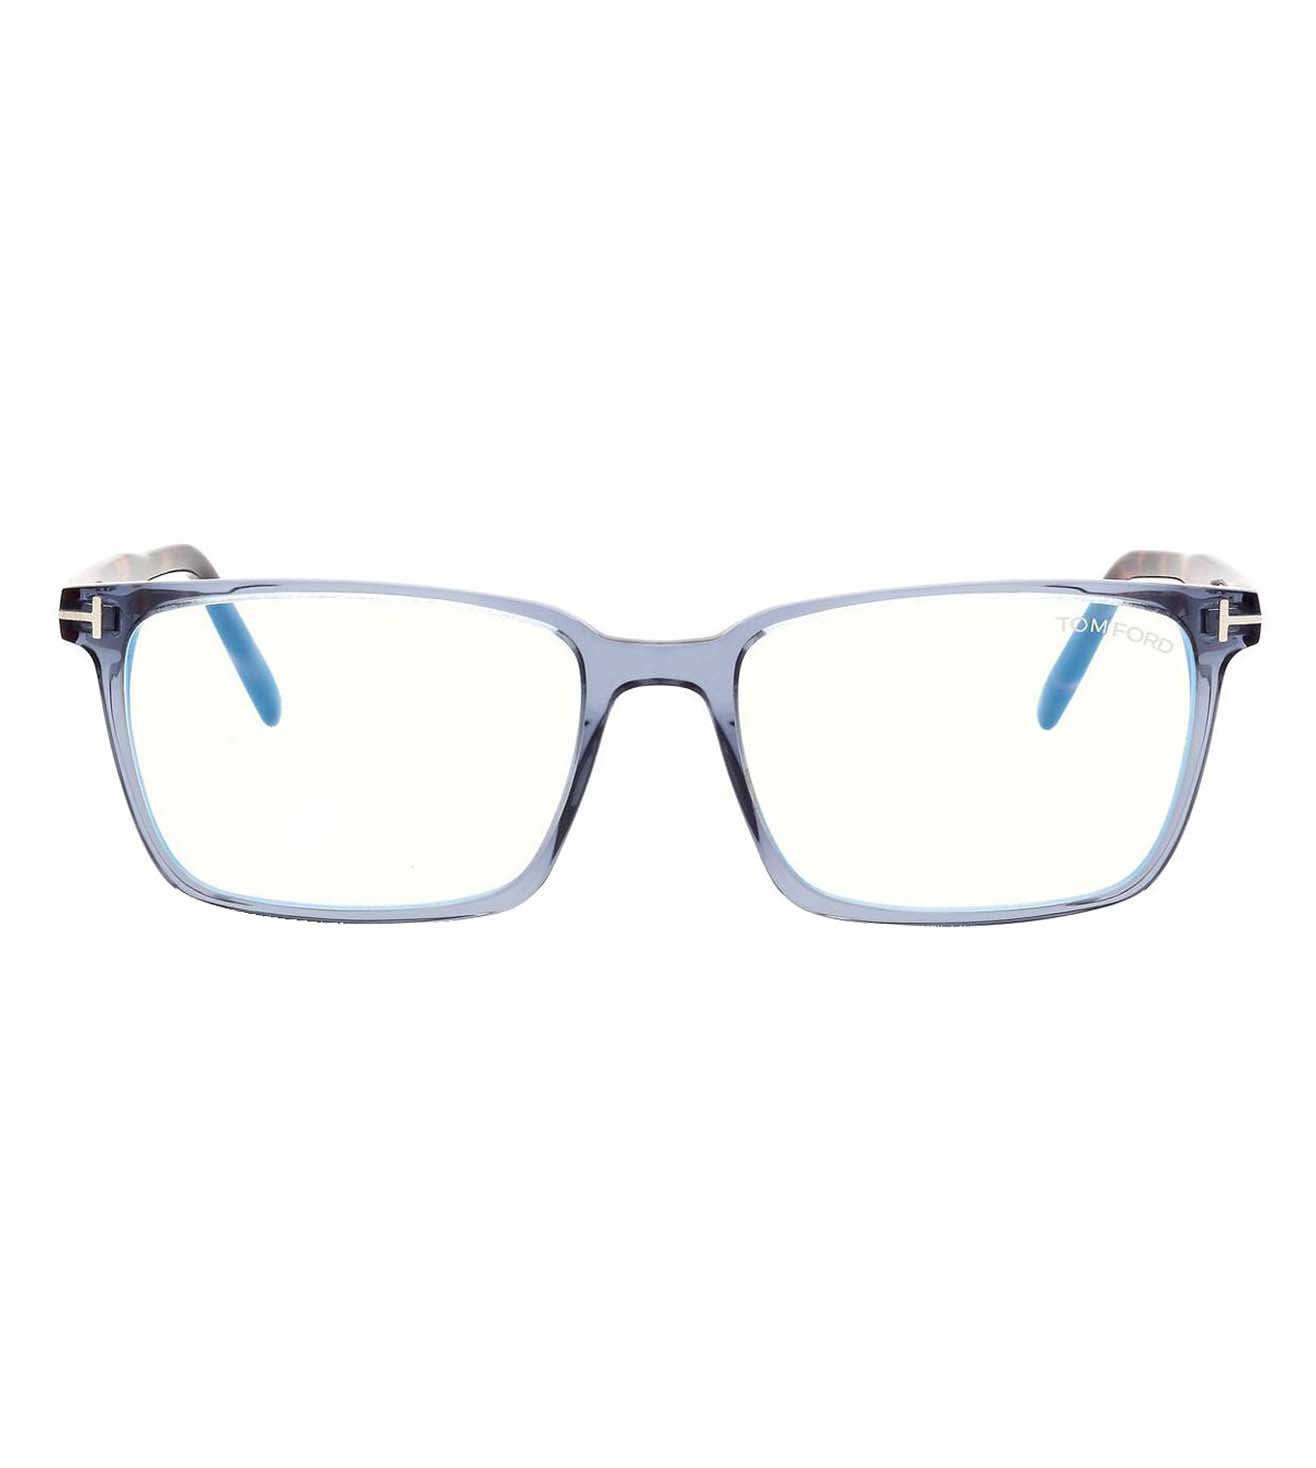 Tom Ford Men's Blue Rectangular Optical Frame